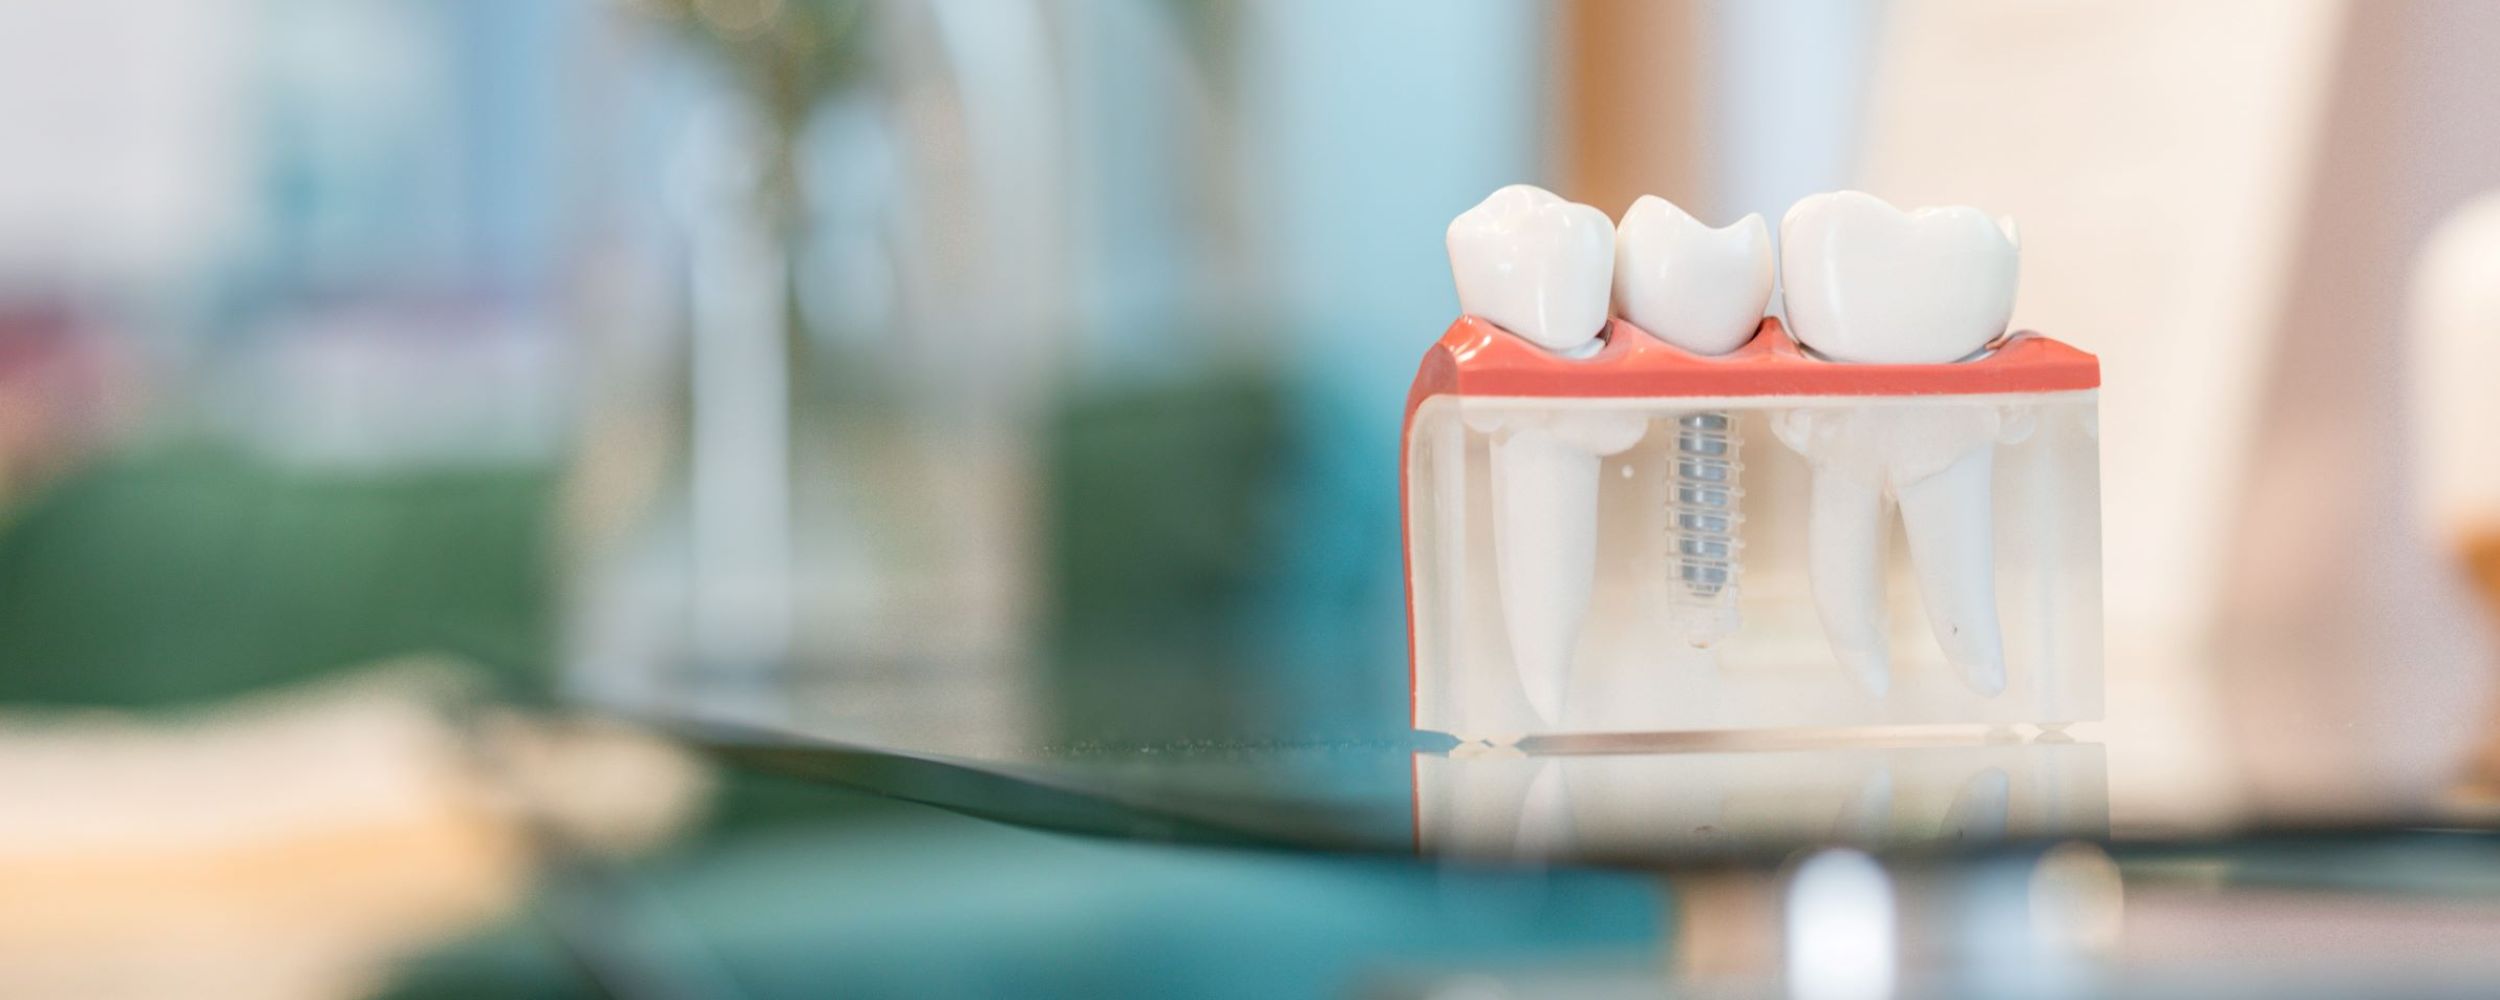 Implant secured dentures